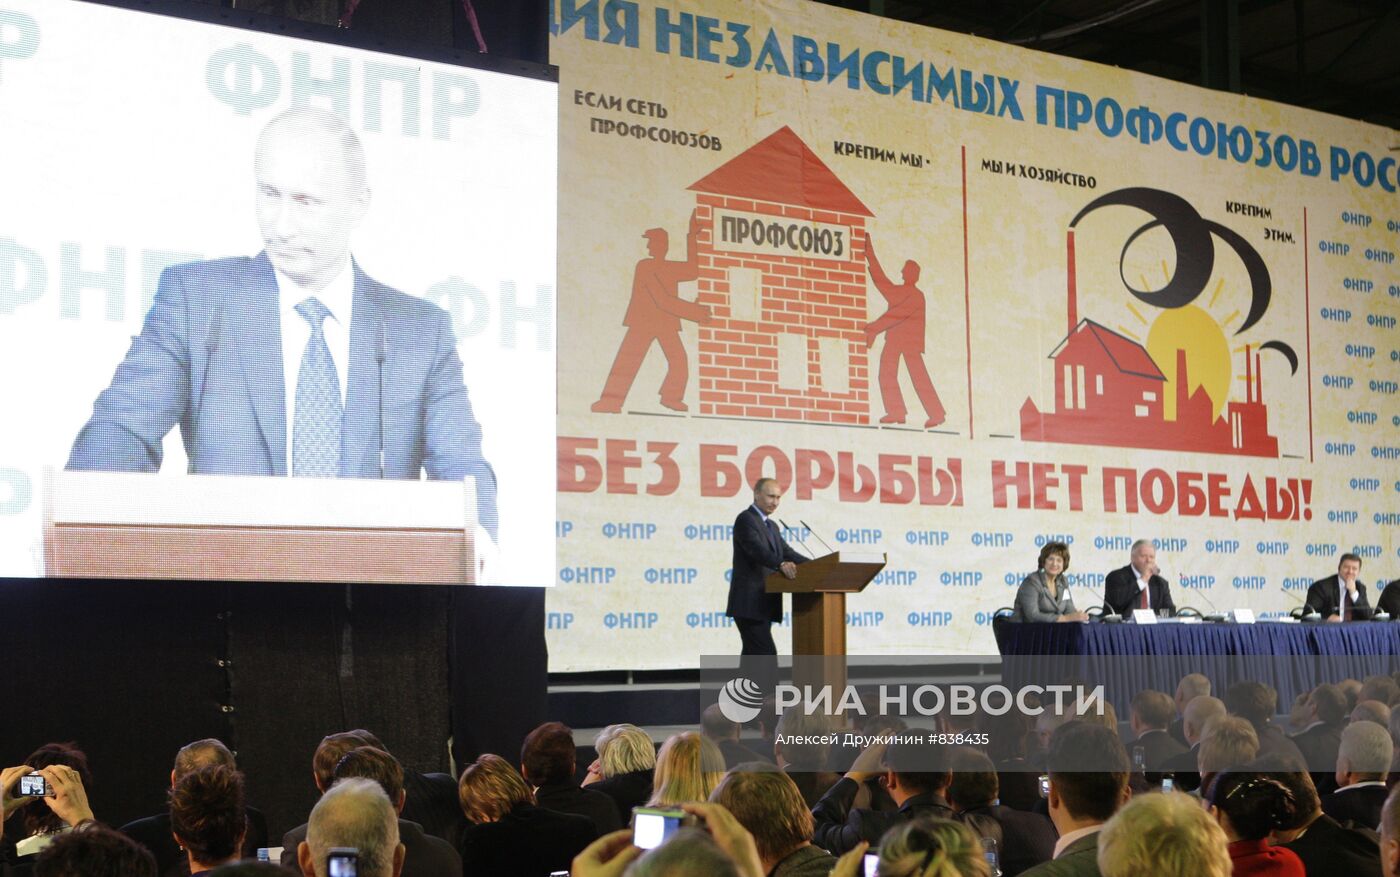 Владимир Путин посетил съезд ФНПР